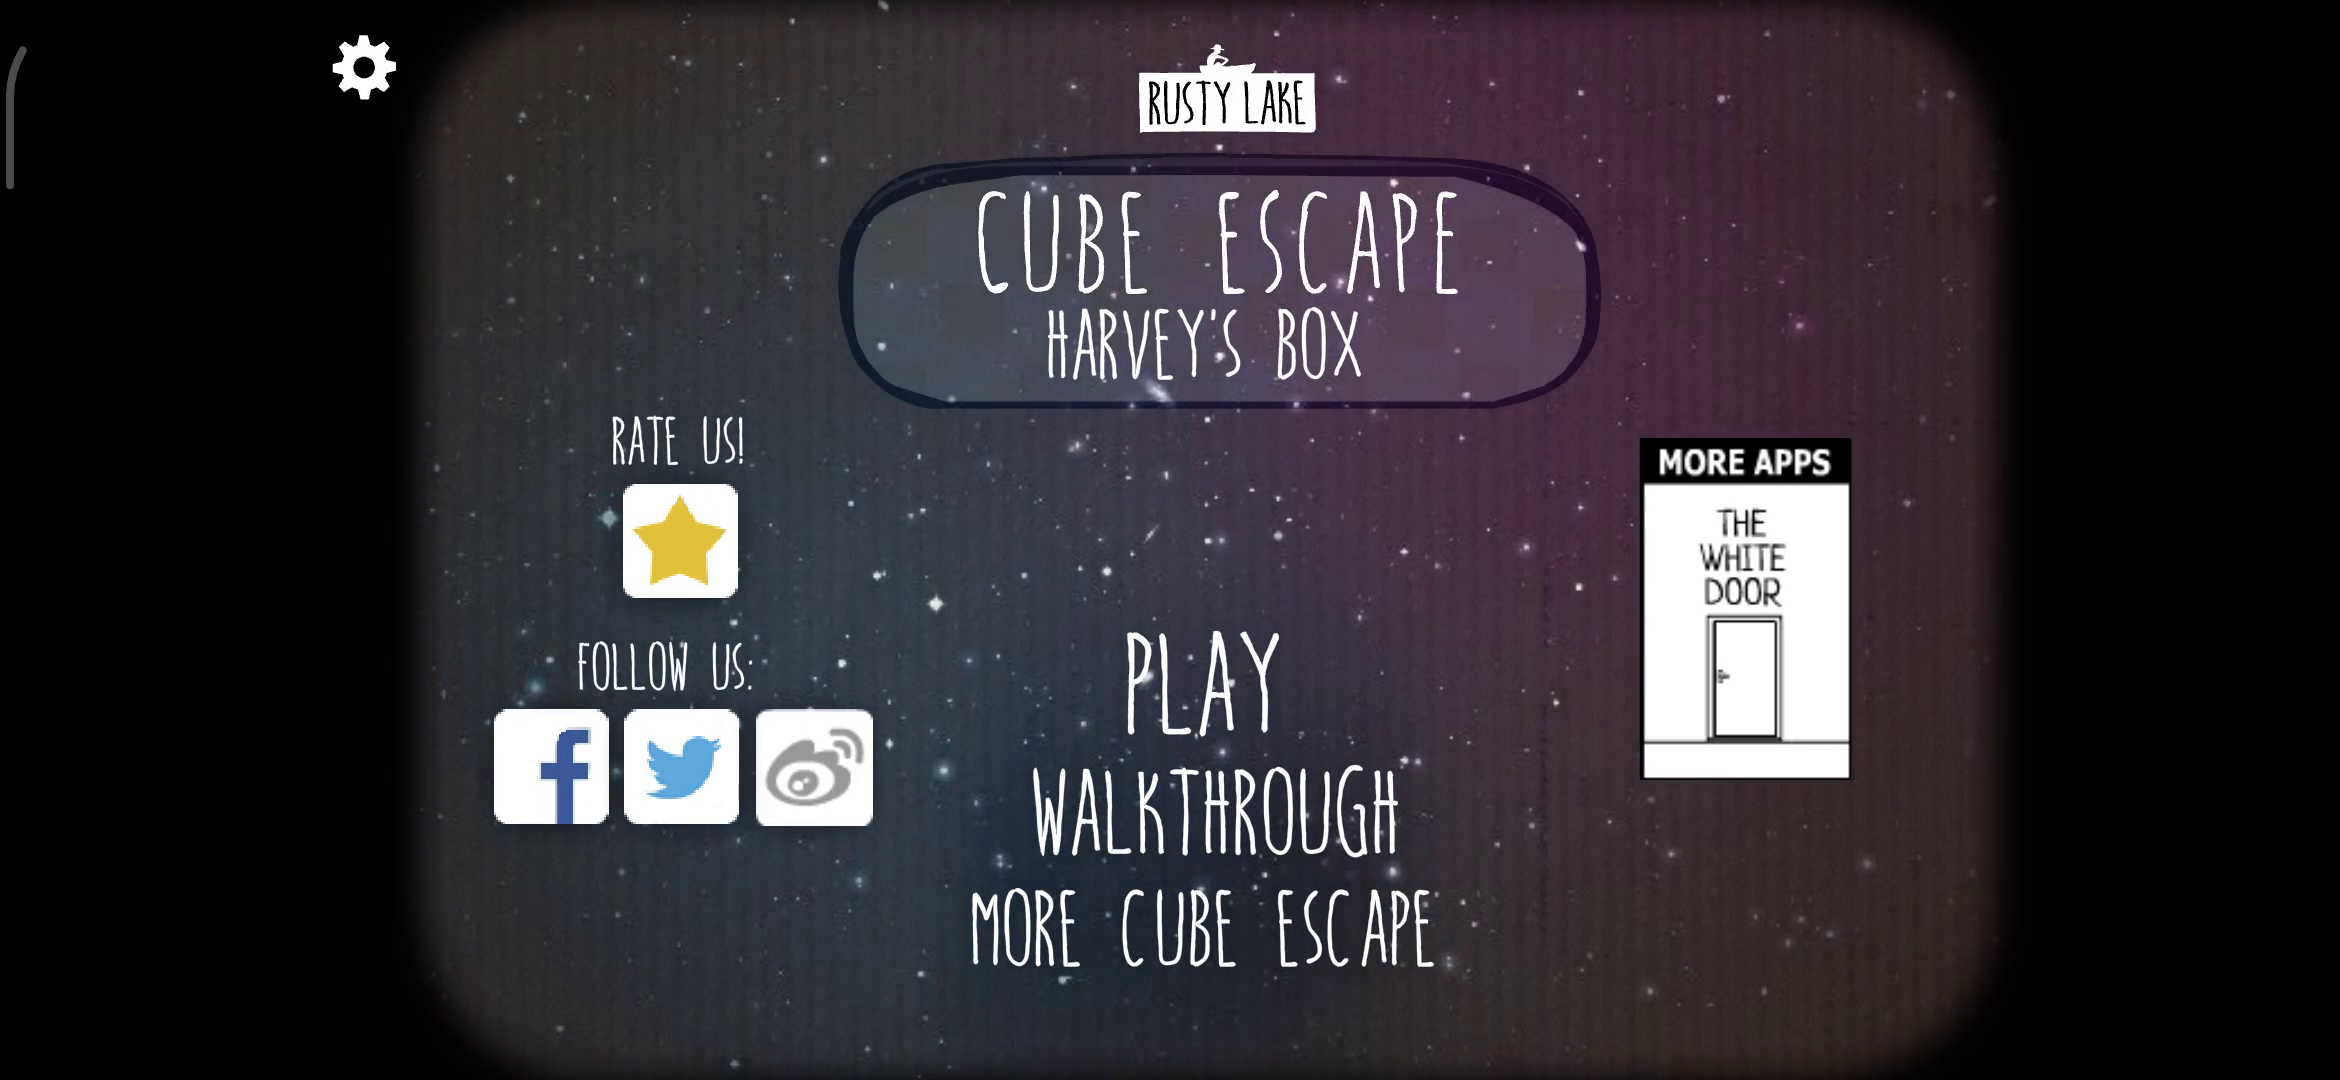 [图文攻略]Cube Escape:Harvey's Box